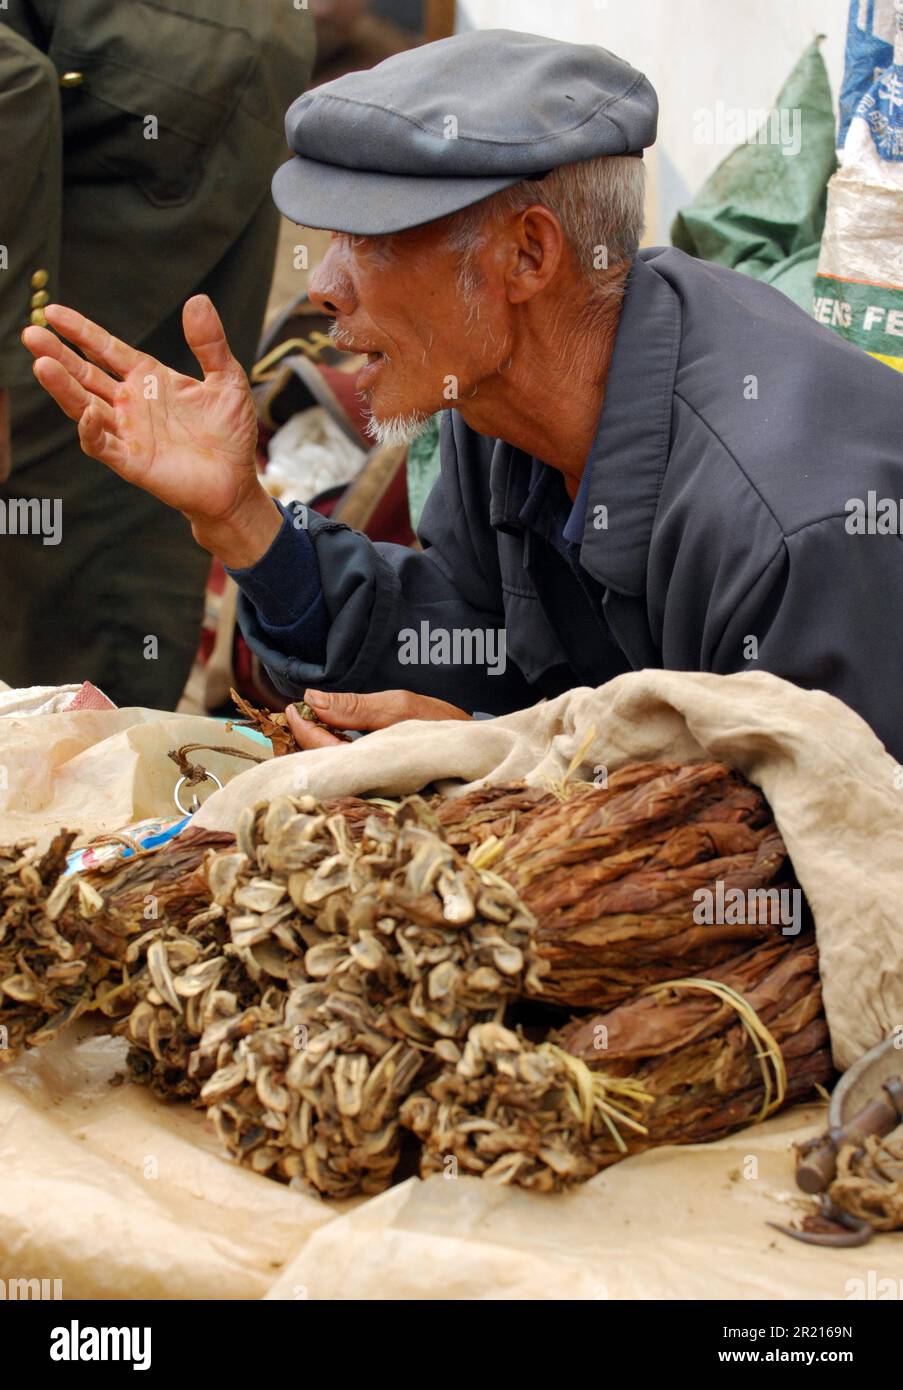 Tabakverkauf in Beigexiang, Yunnan, China, einer kleinen Ortschaft rund 35 km östlich von Kaiyuan, Honge, Yunnan, Südchina. Das kleine Bergdorf beherbergt die ethnische Minderheit Pu Yi, eine kleine Untersektion der ethnischen Minderheit der Yi. Stockfoto